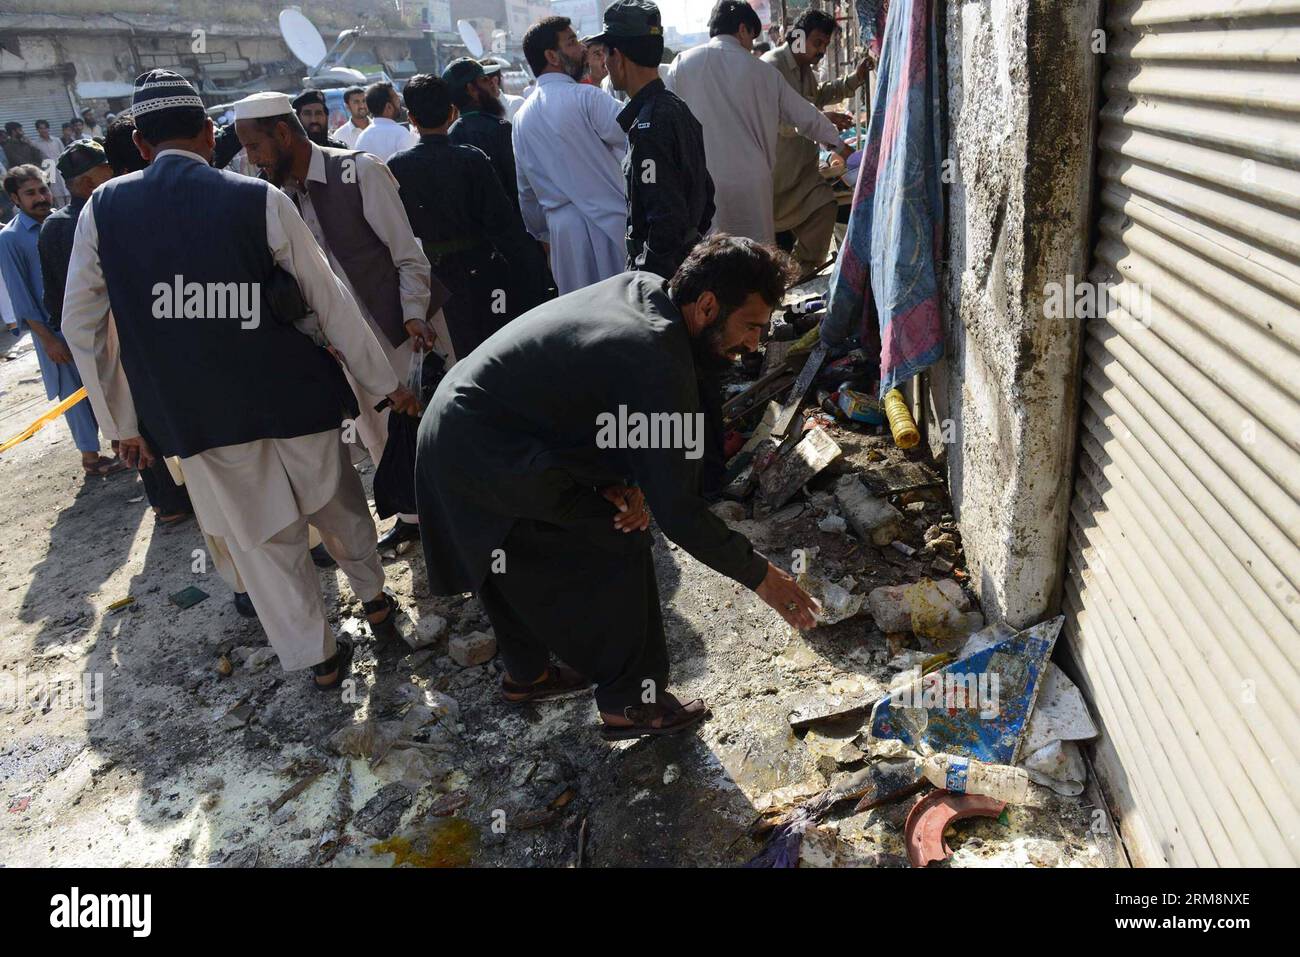 (140422) -- CHARSADDA, 22. April 2014 (Xinhua) -- pakistanische Beamte inspizieren am 22. April 2014 die Sprengstelle in Charsadda im Nordwesten Pakistans. Mindestens vier Menschen wurden getötet und 33 weitere verletzt, als am Dienstagmorgen eine Bombe in der Nähe eines Polizeifahrzeugs im nordwestlichen Charsadda-Bezirk in Pakistan explodierte, berichteten lokale Medien. (Xinhua/Ahmad Sidique) PAKISTAN -CHARSADDA-ATTACK PUBLICATIONxNOTxINxCHN Charsfield Adda 22. April 2014 XINHUA pakistanische Beamte inspizieren die Sprengstelle im Nordwesten Pakistans S Charsfield Adda AM 22. April 2014 wurden mindestens vier Prominente GETÖTET und 33 weitere verletzt Stockfoto